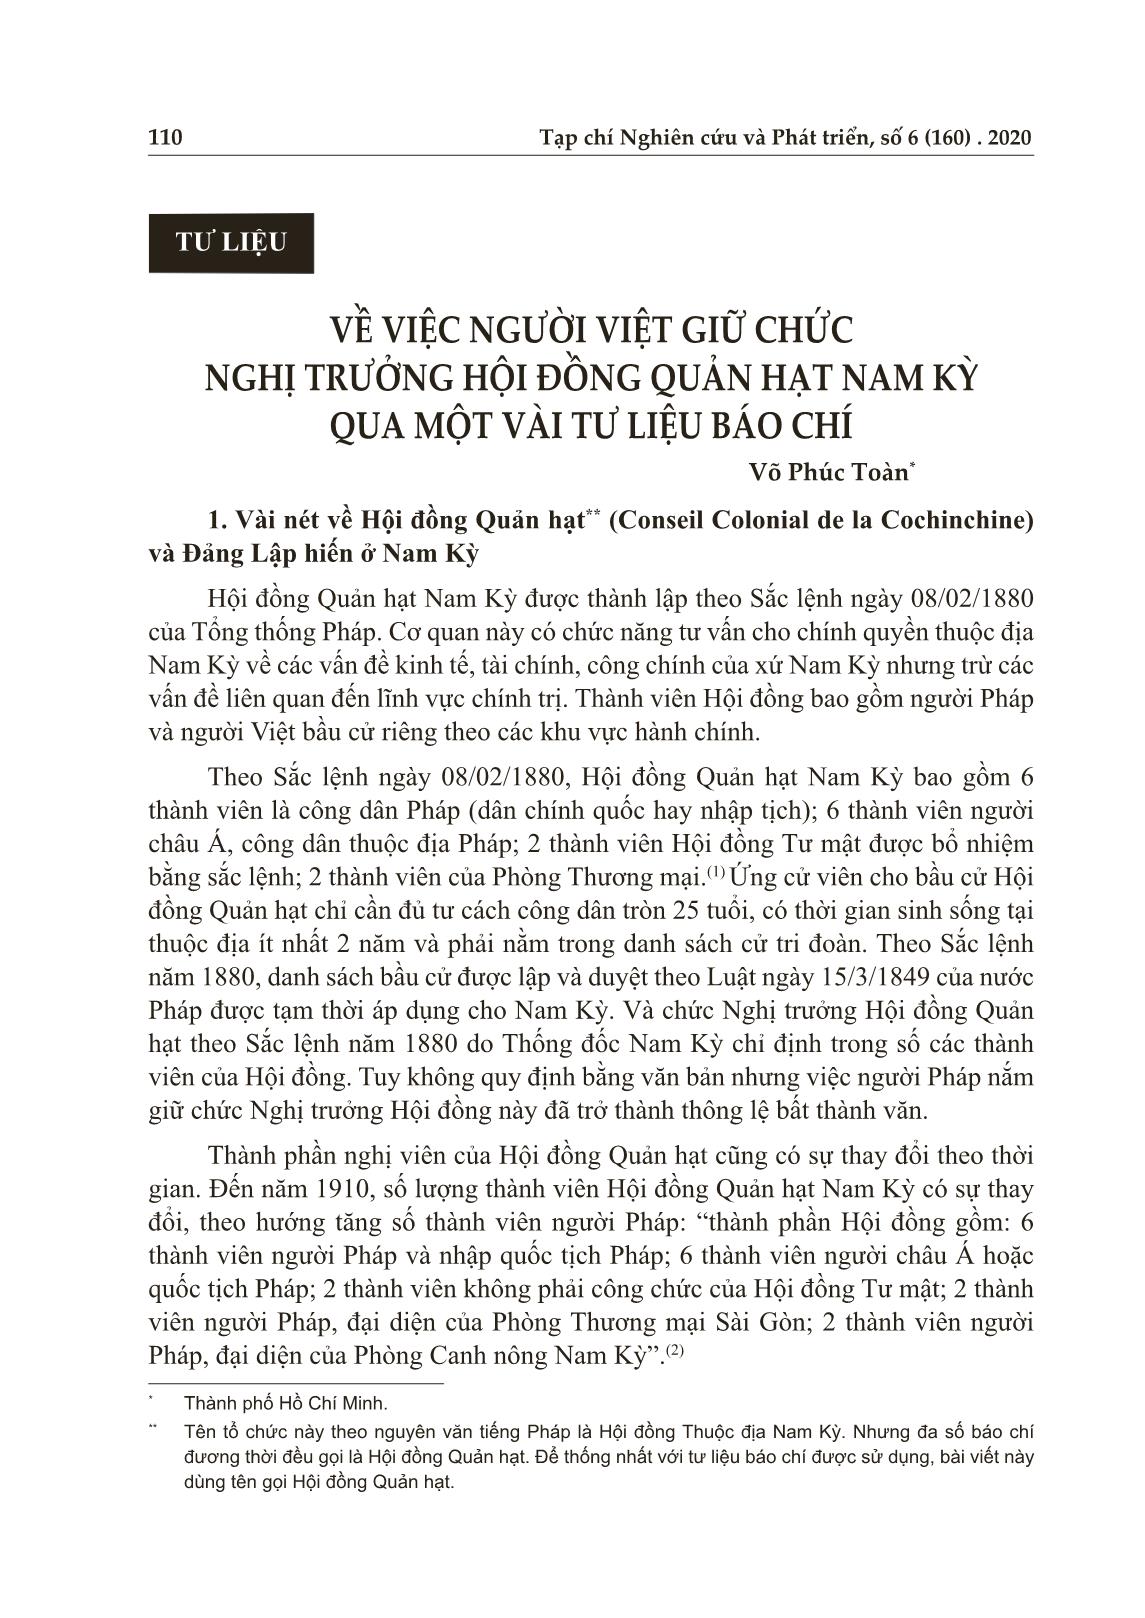 Về việc người Việt giữ chức nghị trưởng hội đồng quản hạt Nam Kỳ qua một vài tư liệu báo chí trang 1